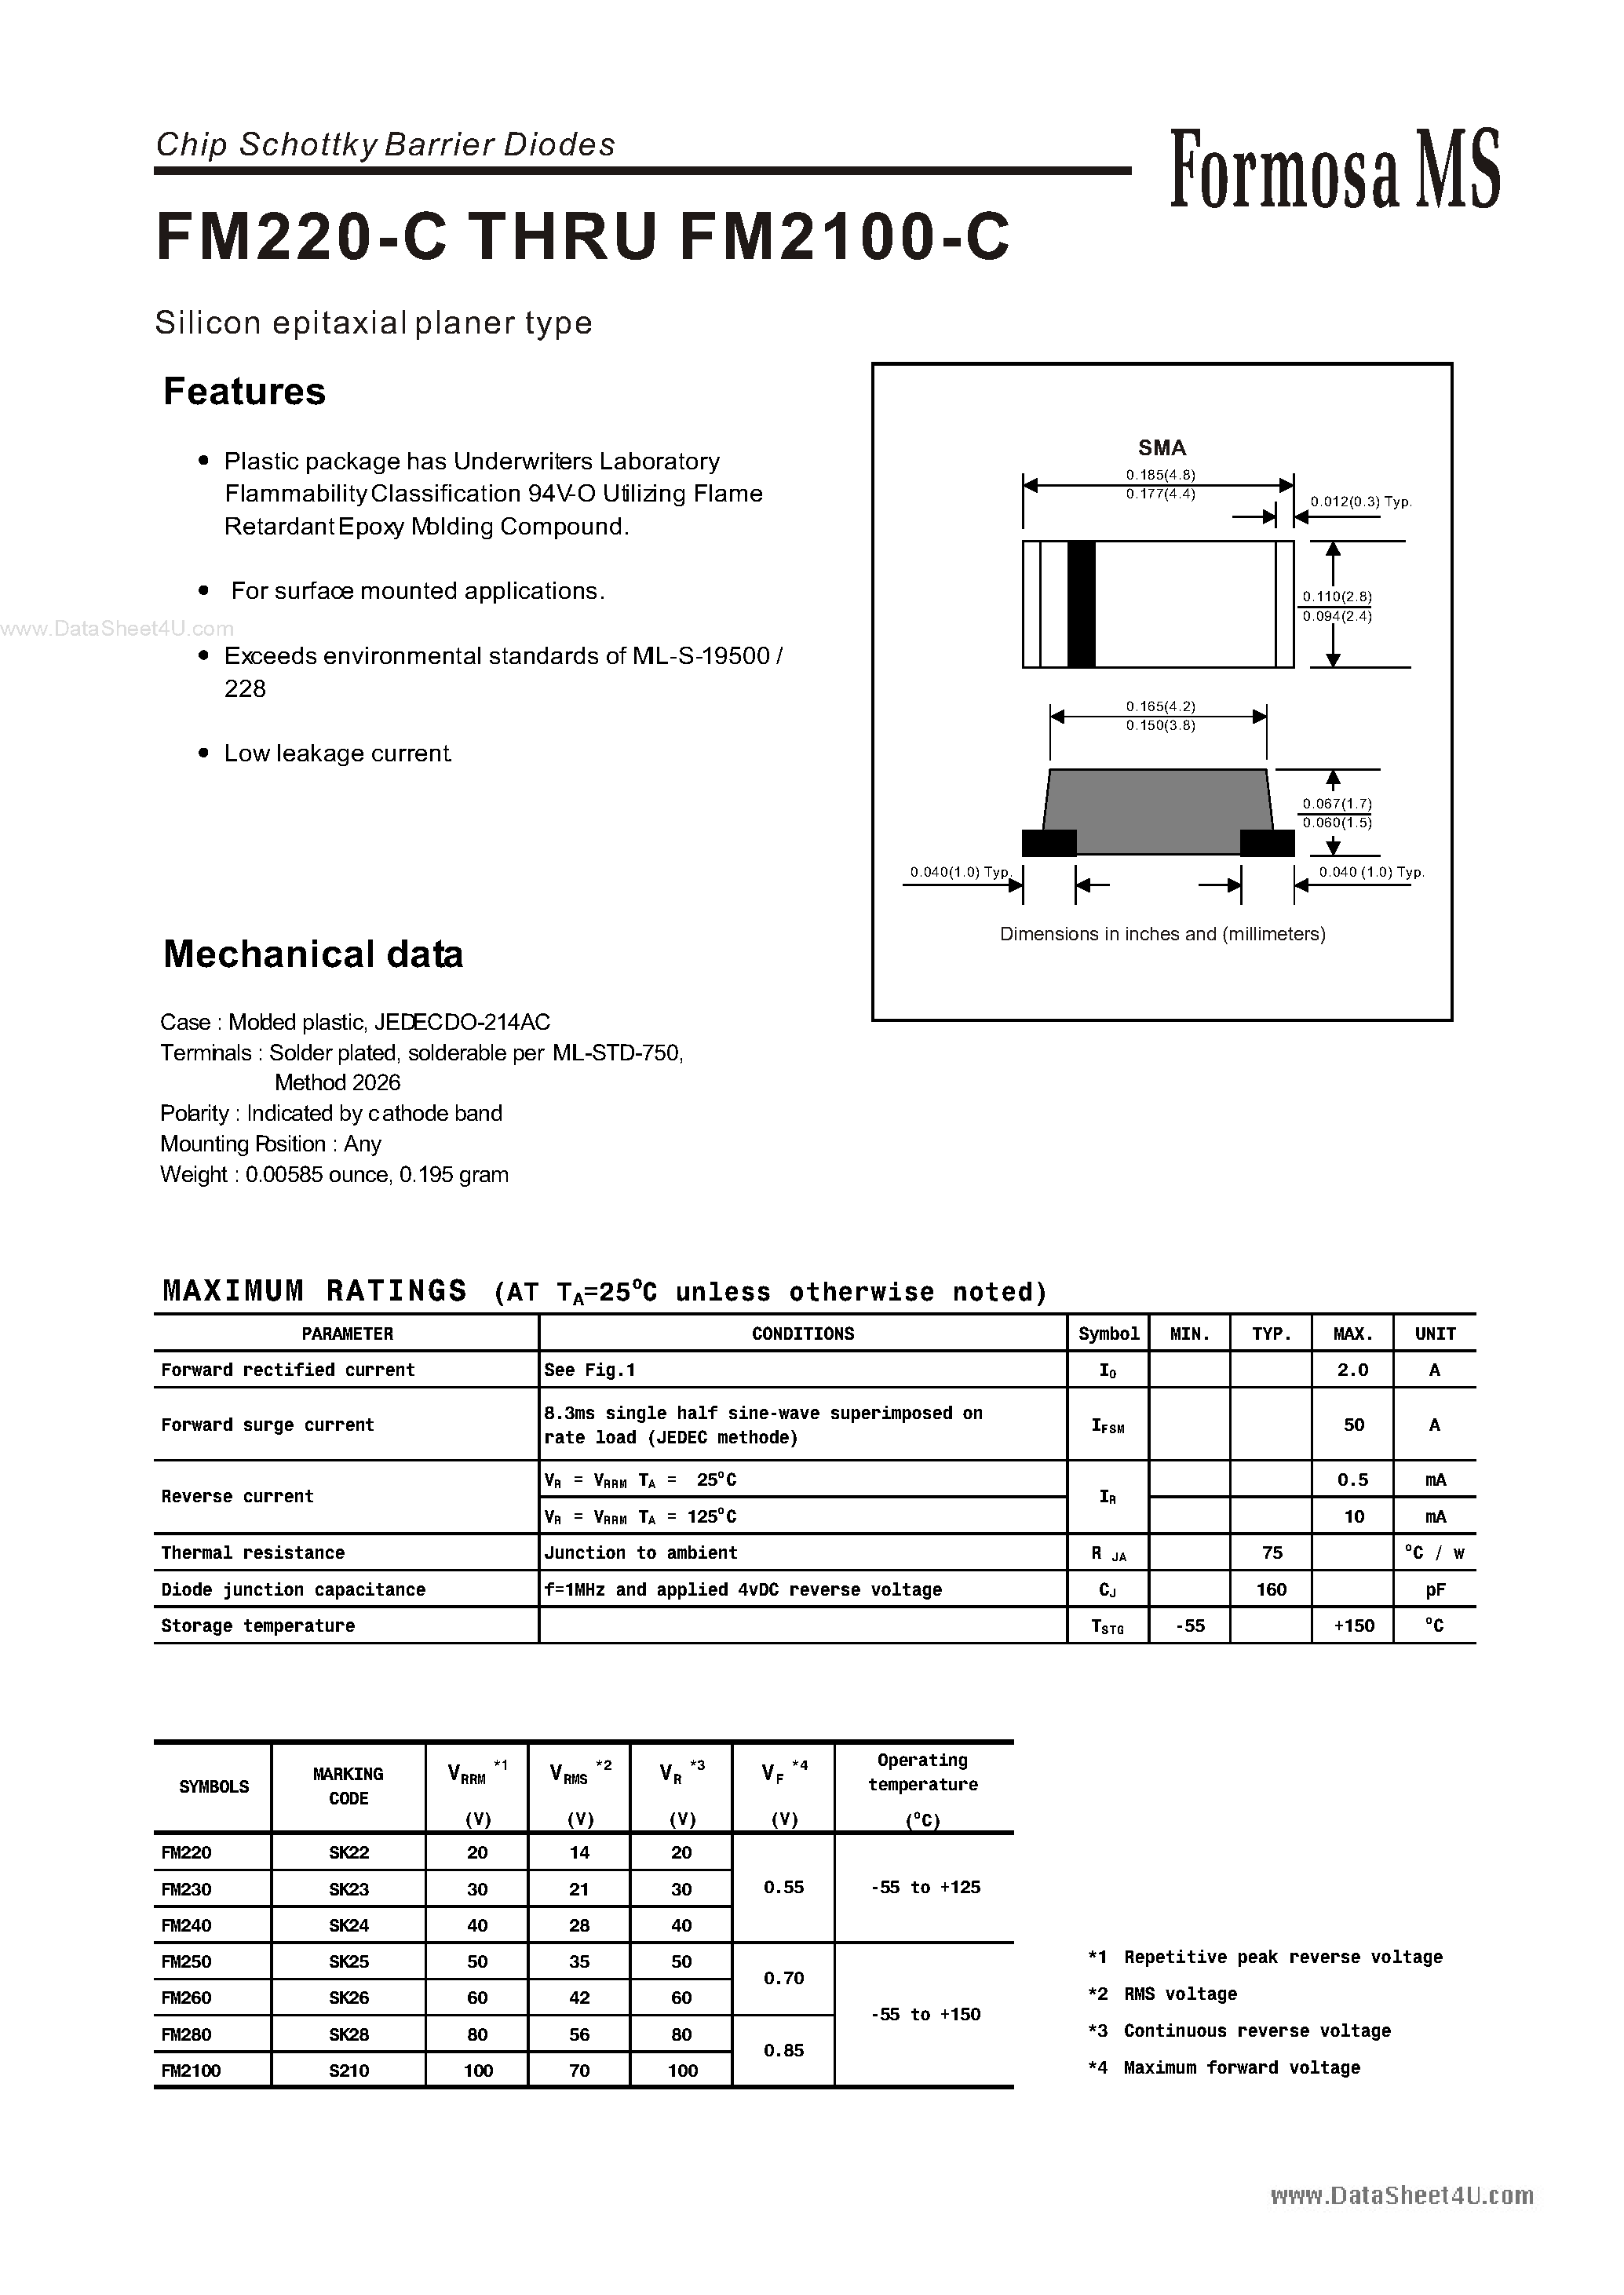 Datasheet FM2100-C - (FM2xx-C) Chip Schottky Barrier Diodes page 1